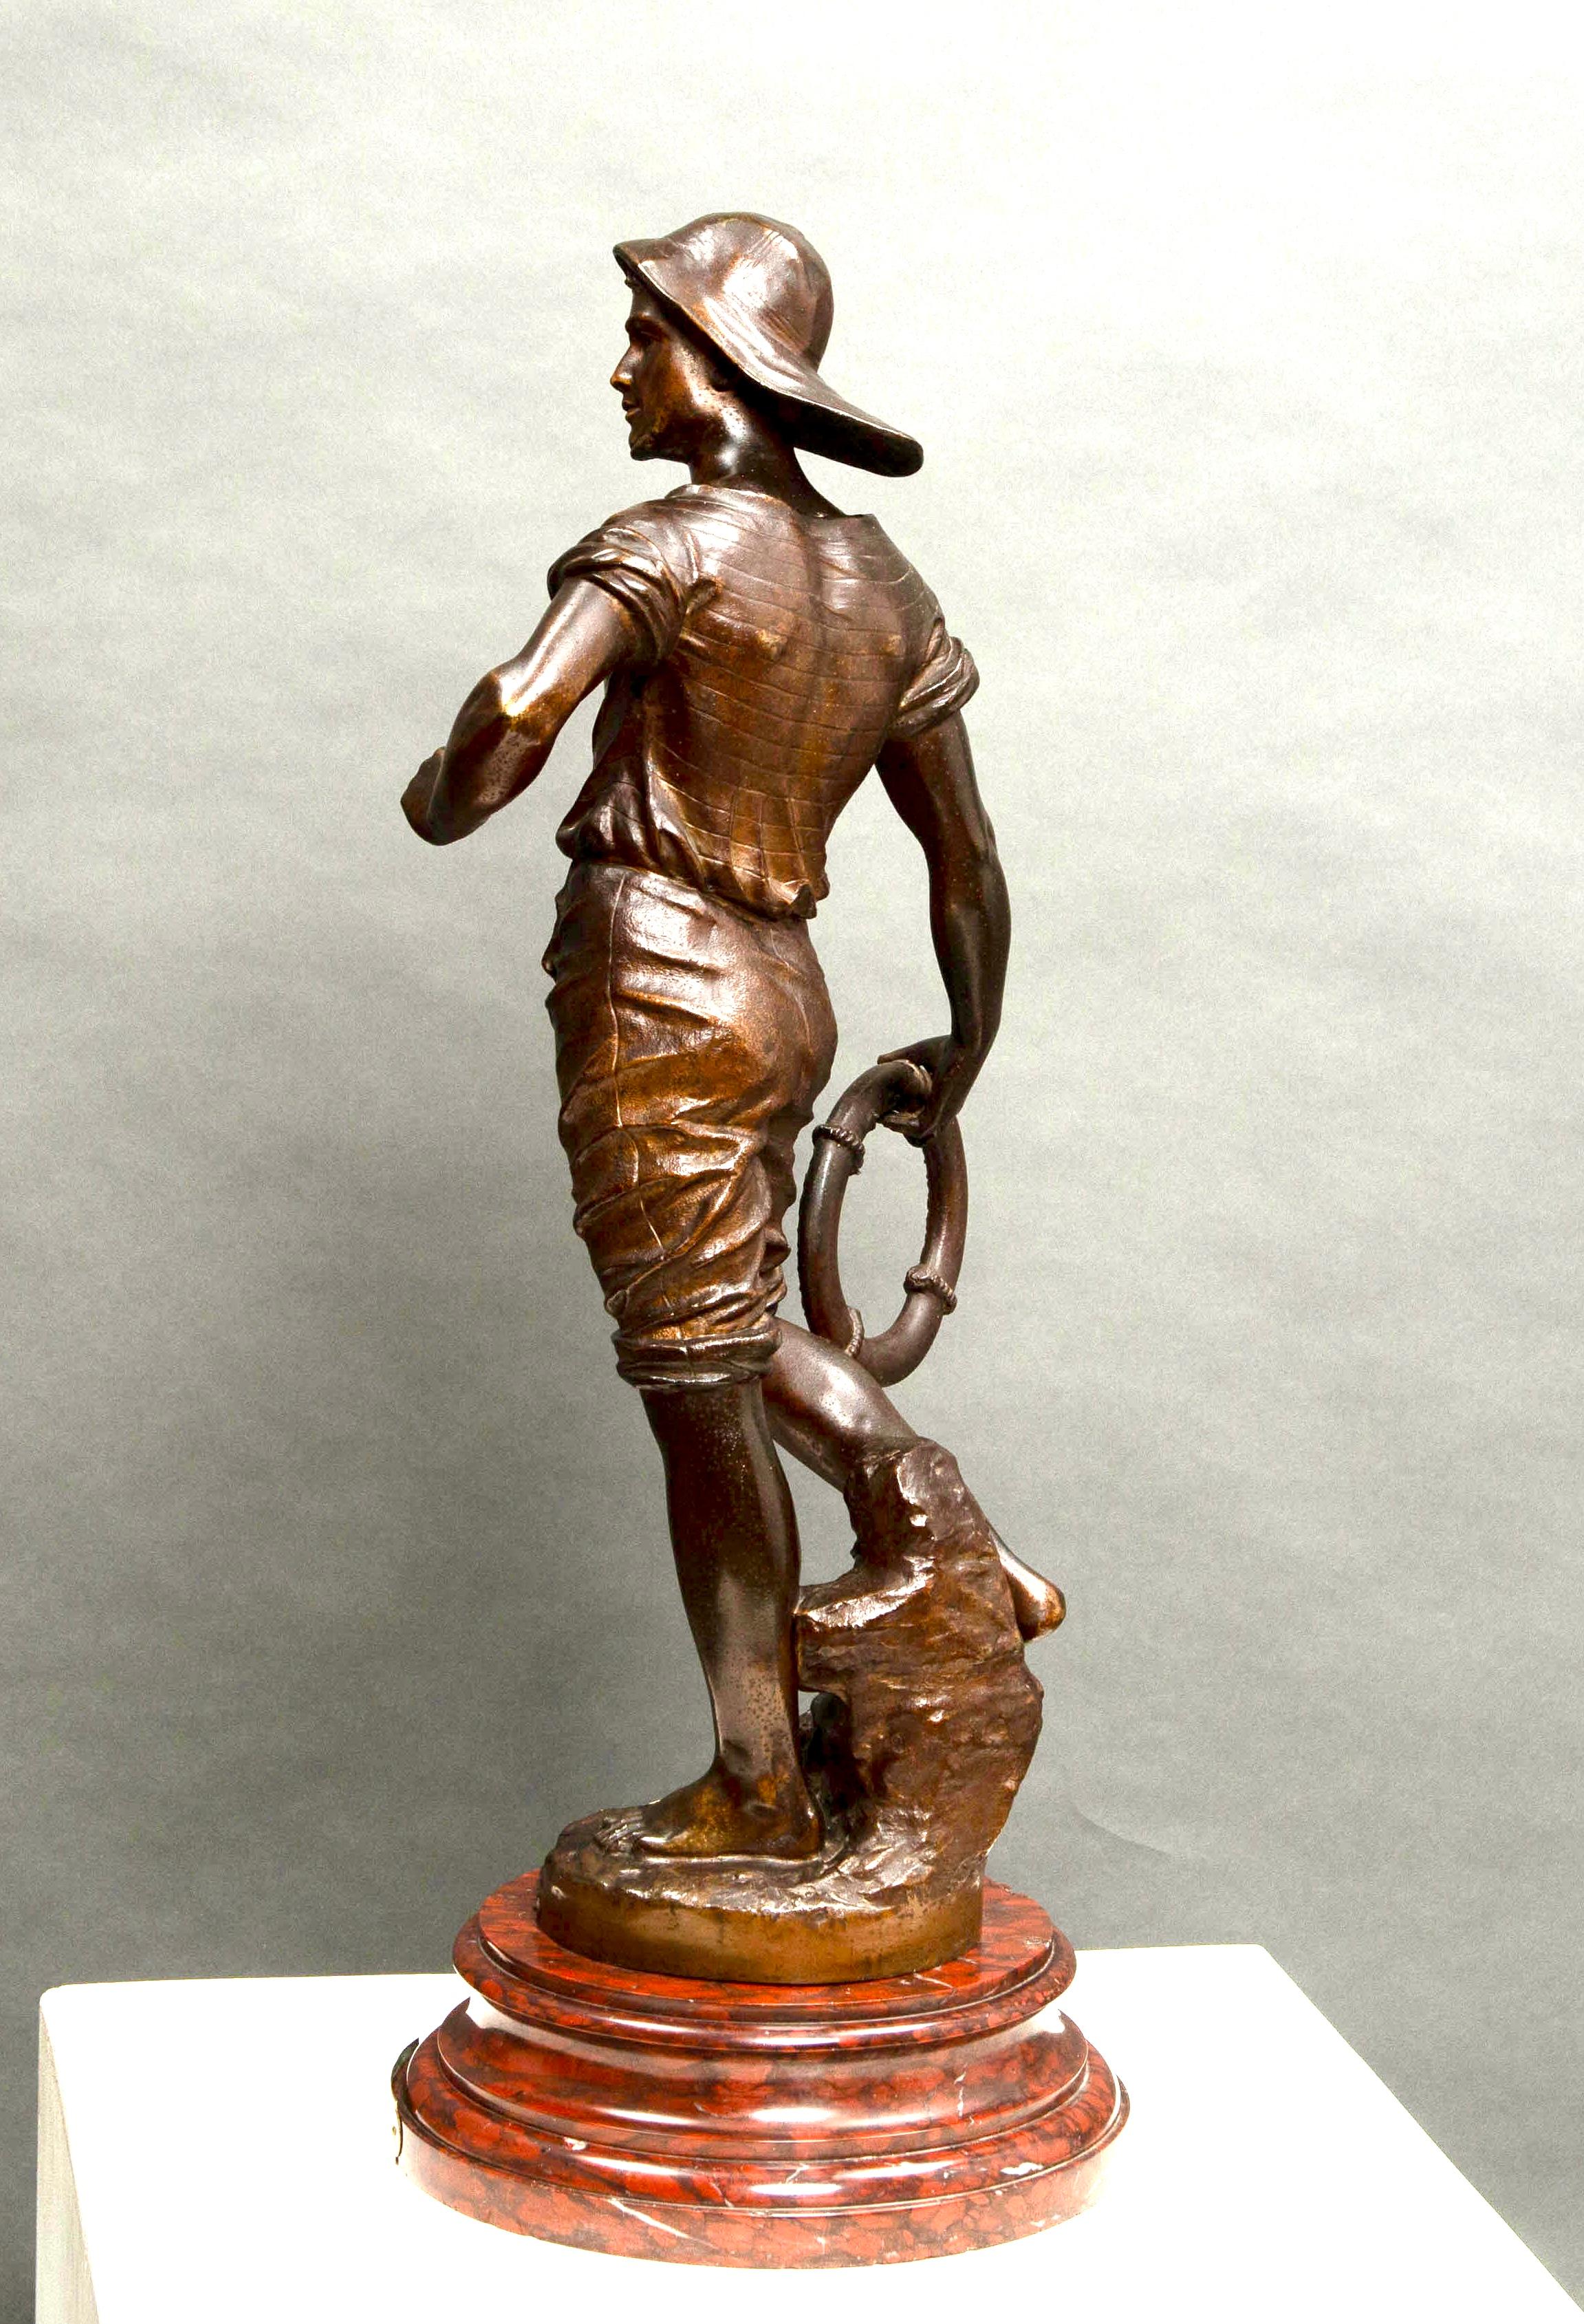 Rettungsschwimmer Bronzestatue auf beeindruckendem Marmorsockel Signiert von GUILLEMIN

🌟 Ein Einzelstück für Kunstliebhaber und leidenschaftliche Sammler! Wir bieten eine prächtige Rettungsschwimmerstatue aus Bronze auf einem eleganten runden